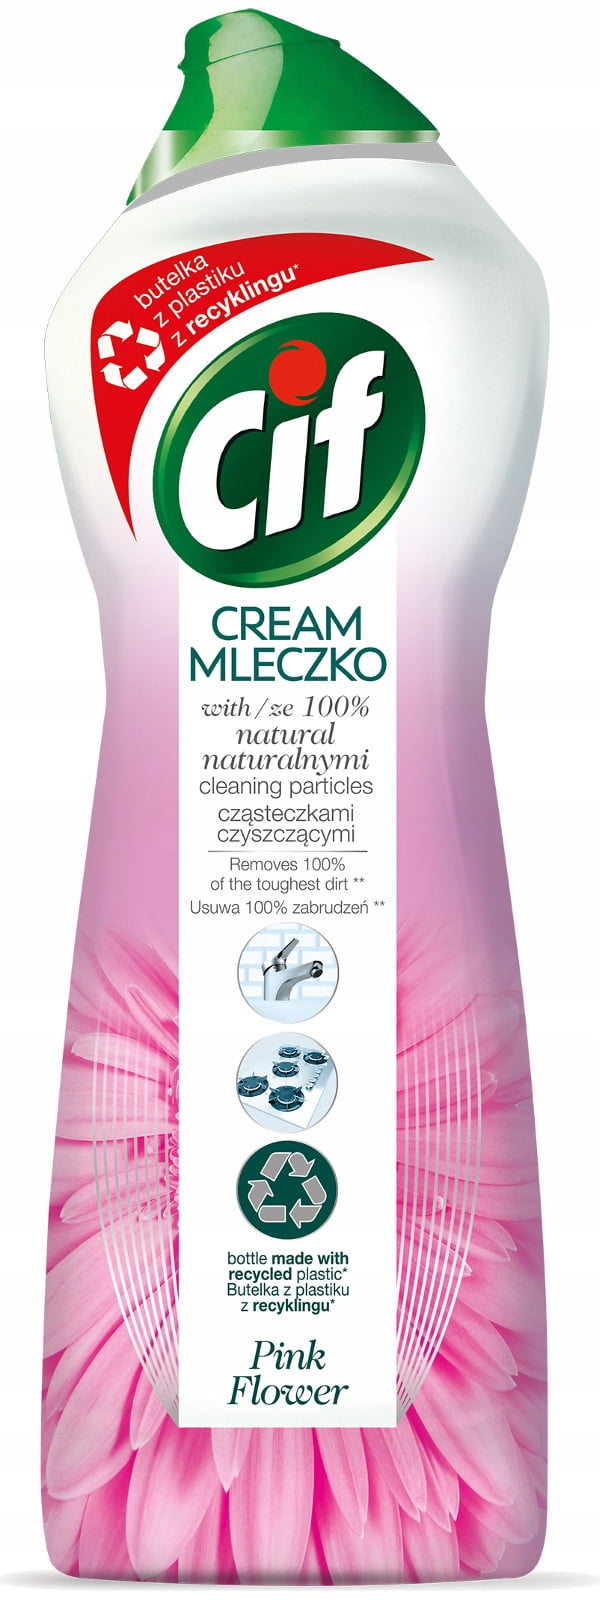 Cif Multipurpose Cream Cleaner 750ml Euclyptus